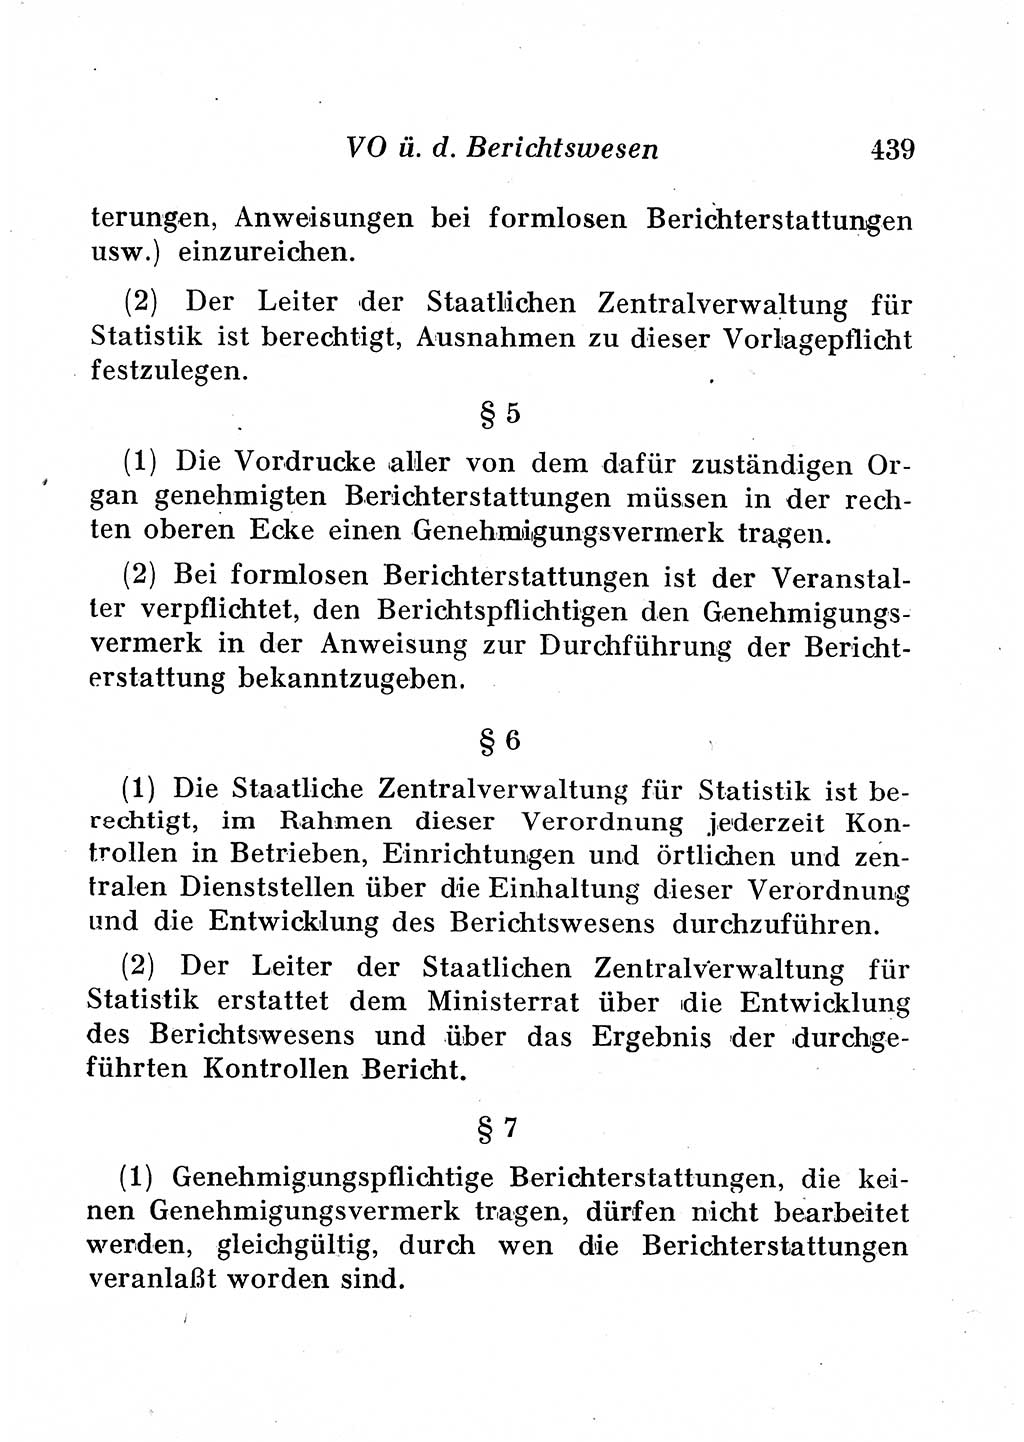 Staats- und verwaltungsrechtliche Gesetze der Deutschen Demokratischen Republik (DDR) 1958, Seite 439 (StVerwR Ges. DDR 1958, S. 439)